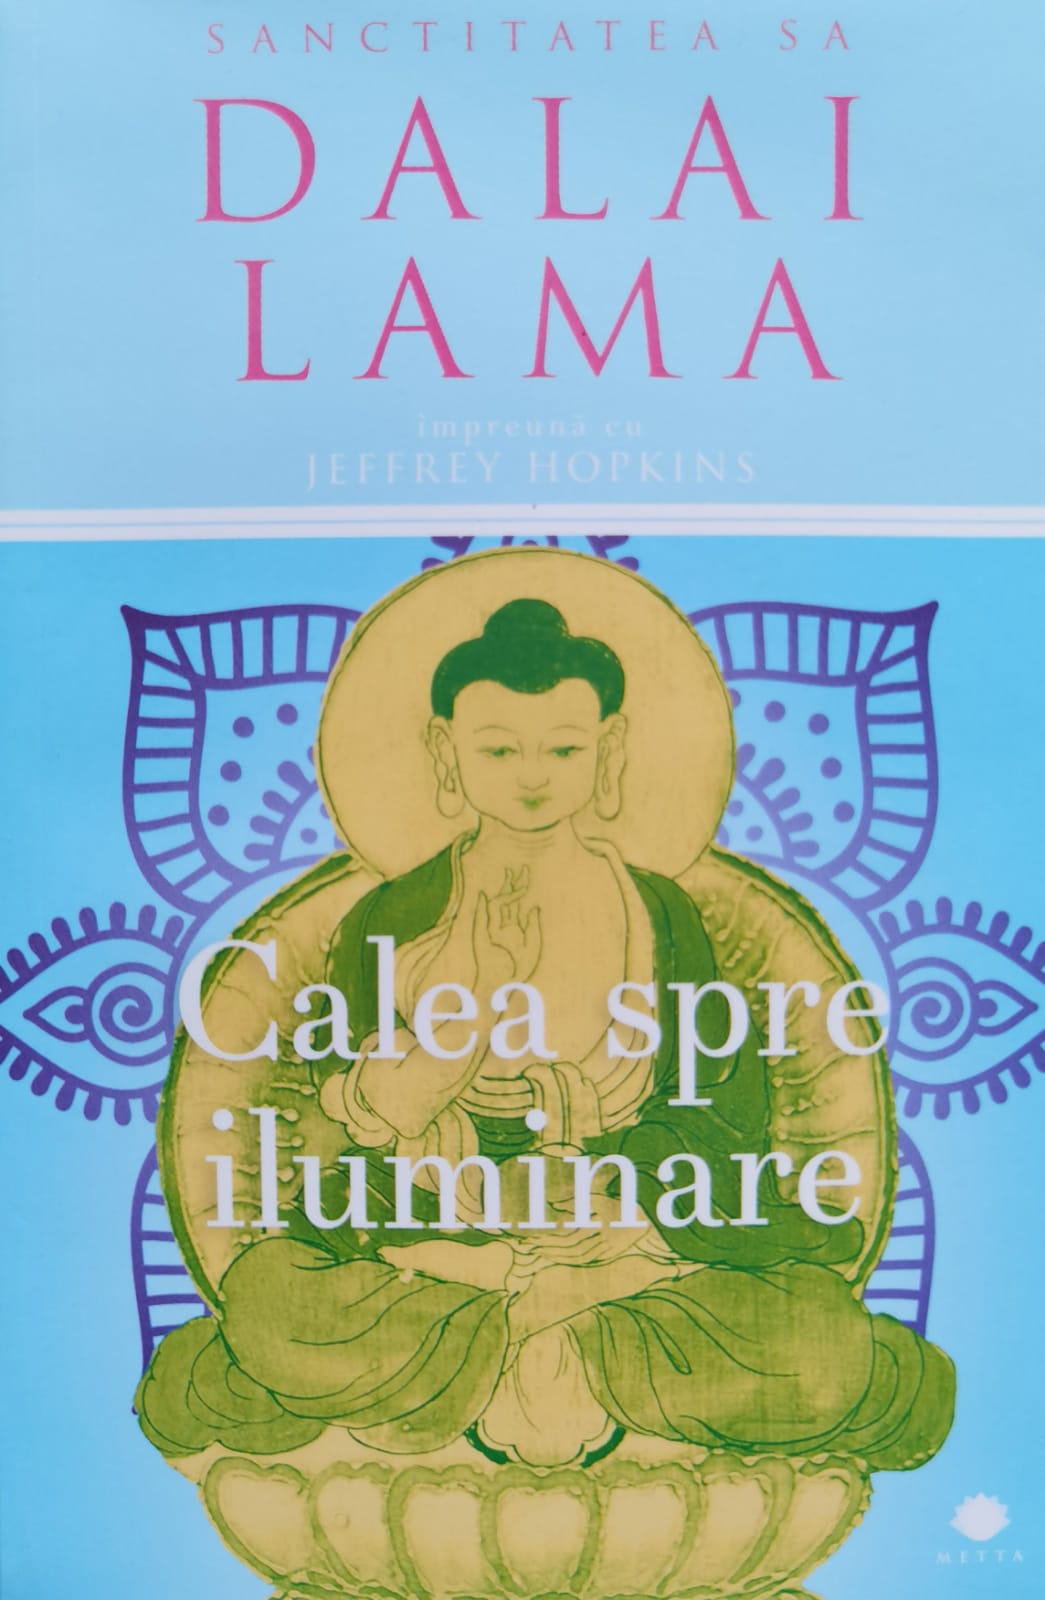 calea spre iluminare                                                                                 dalai lama                                                                                          